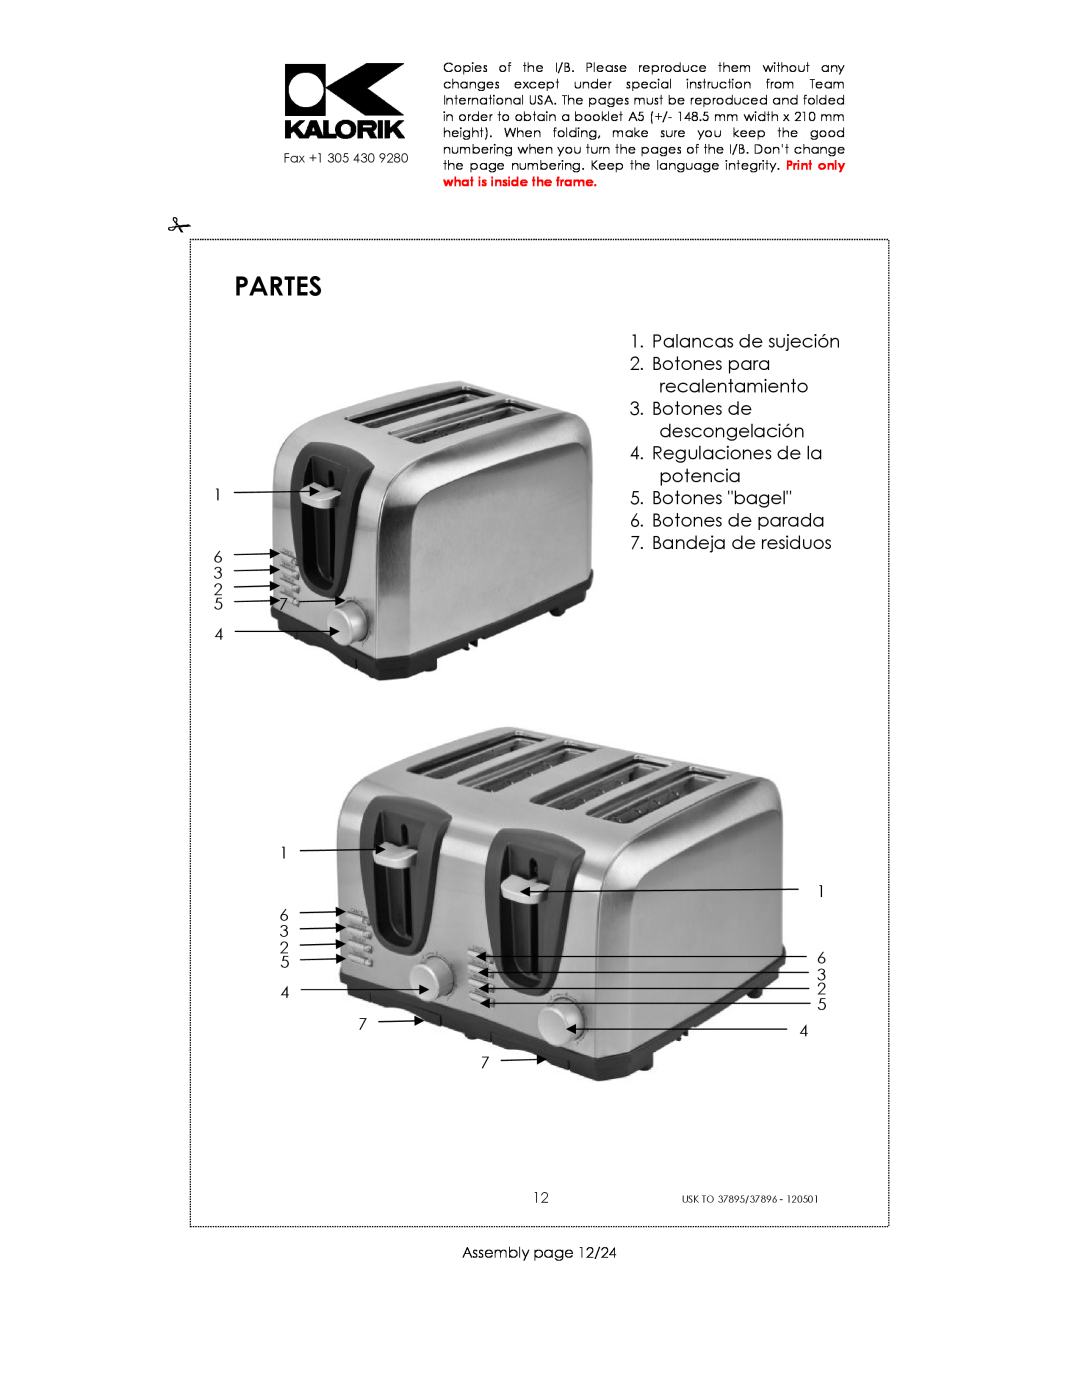 Kalorik USK TO 37896 manual Partes, Slide-ou, Palancas de sujeción 2. Botones para recalentamiento, Assembly page 12/24 